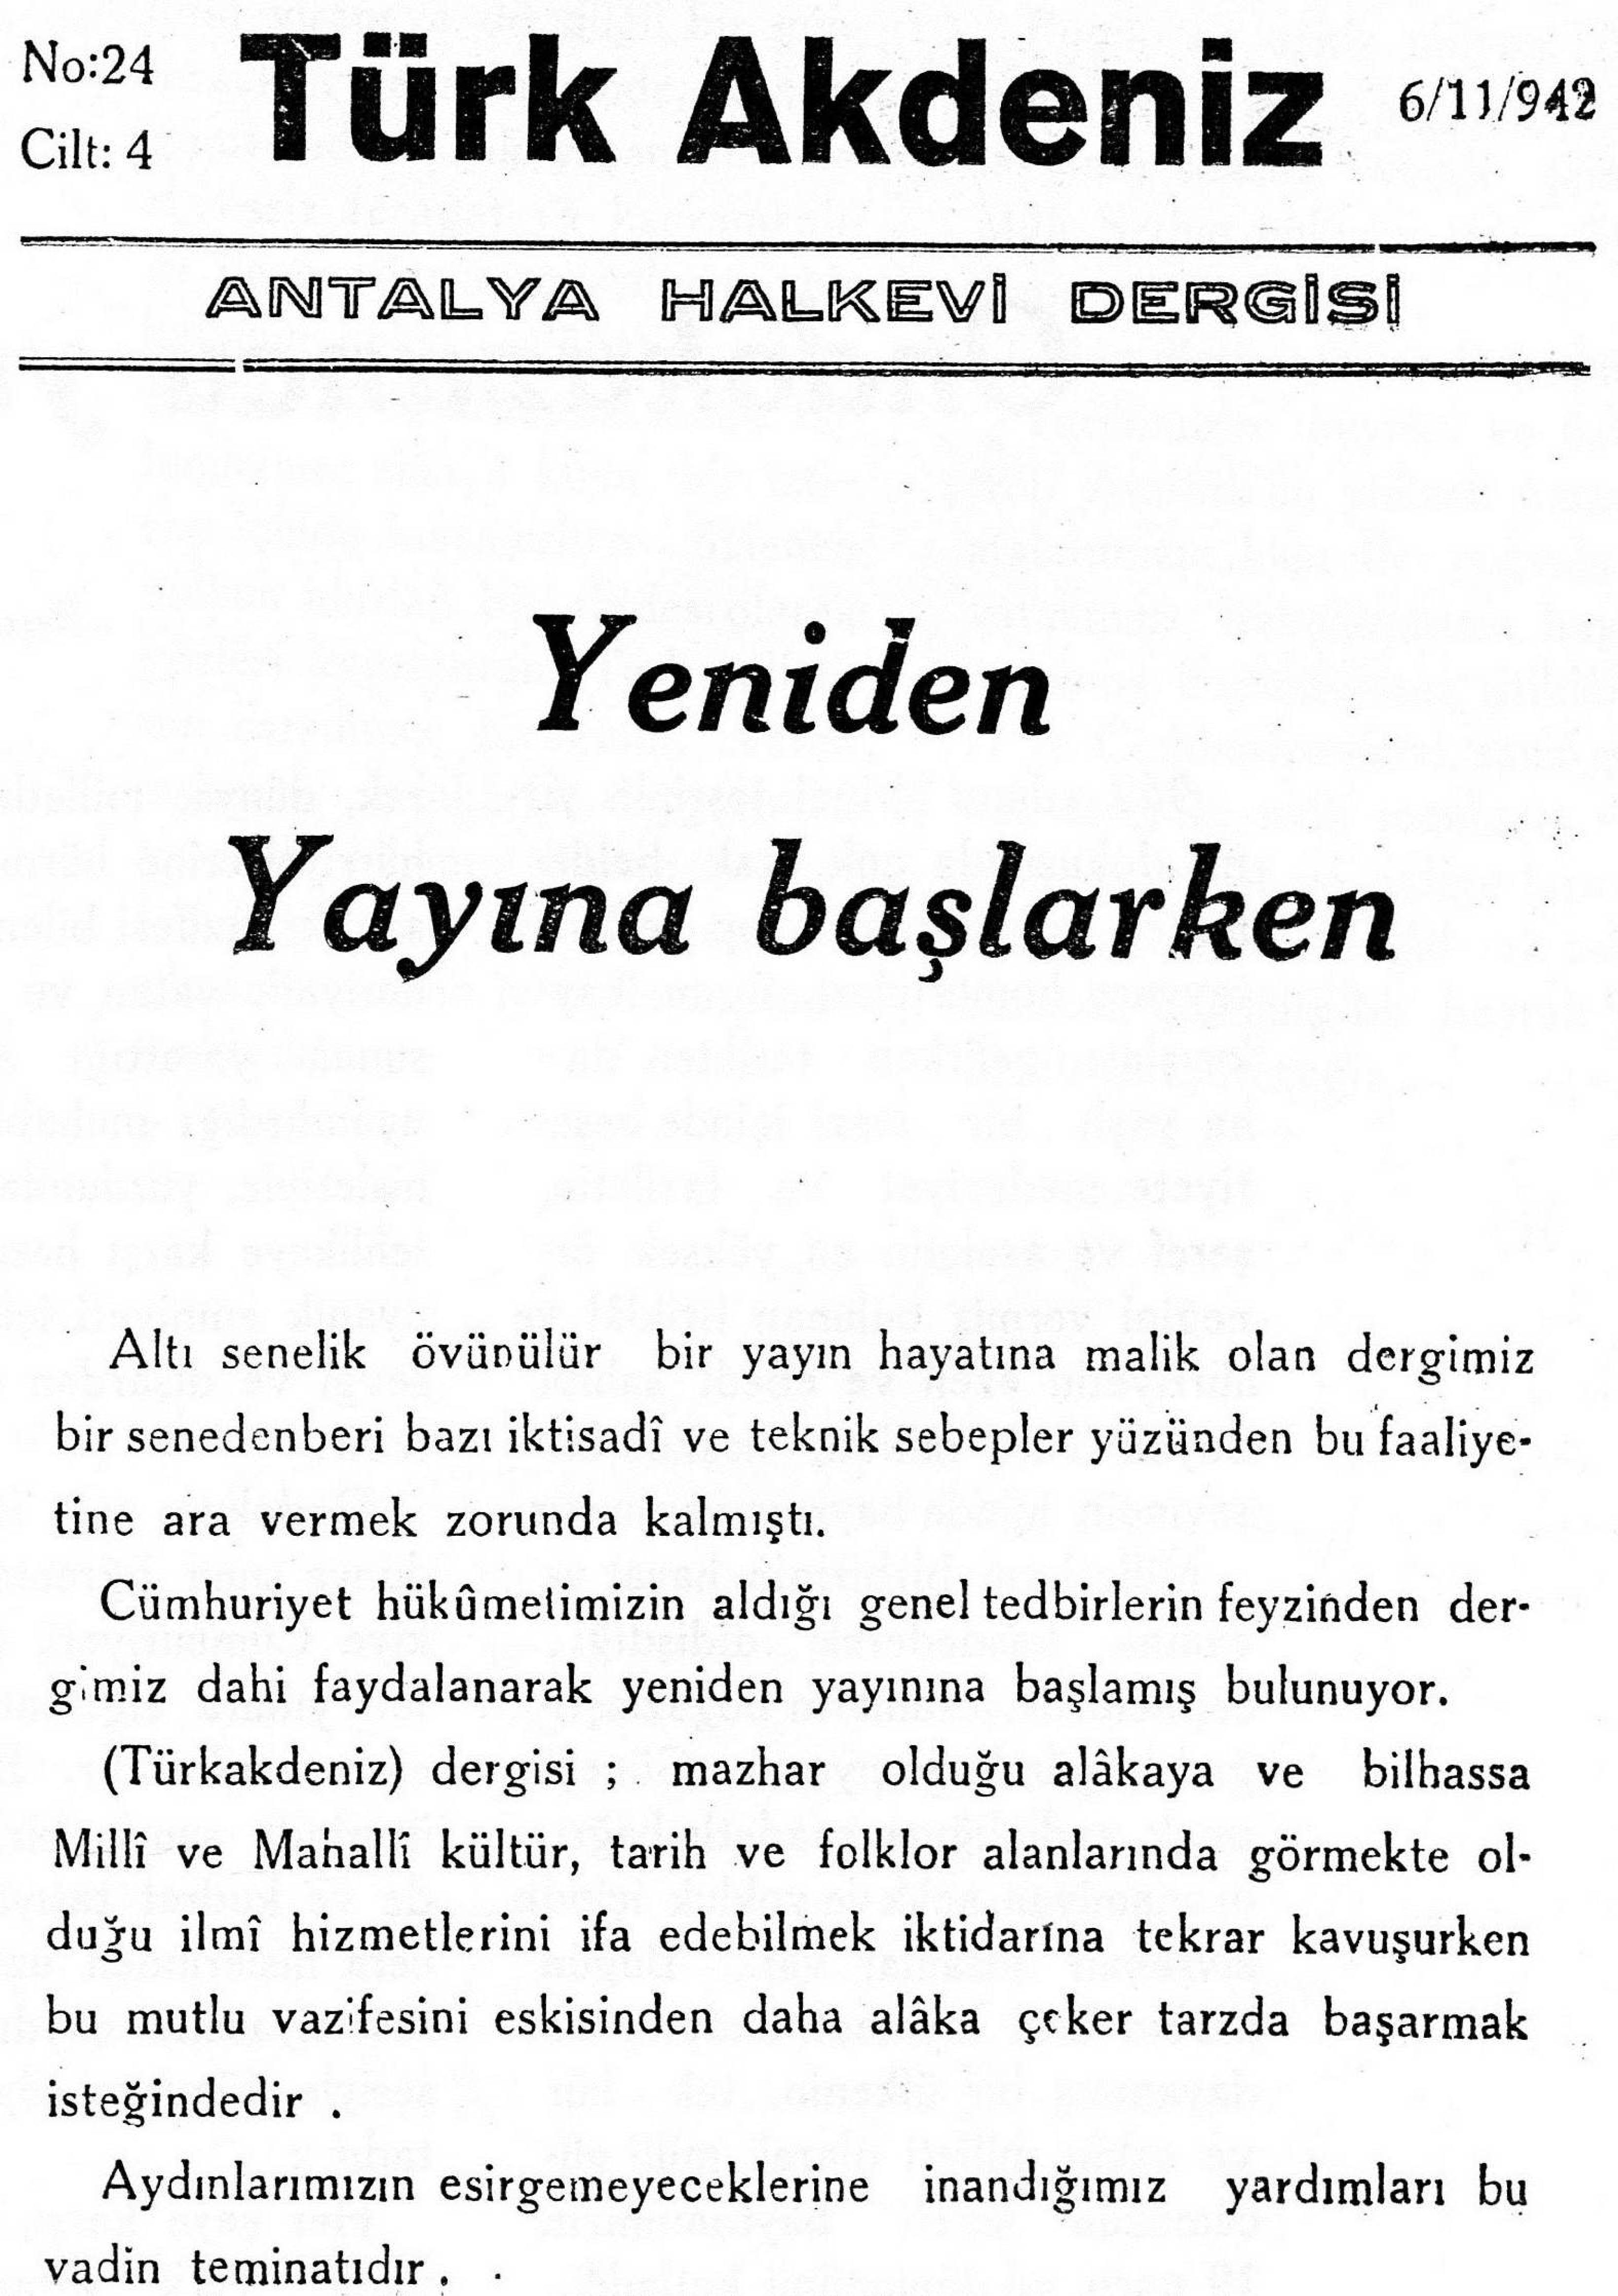 he-turk-akdeniz_1942-4(24)